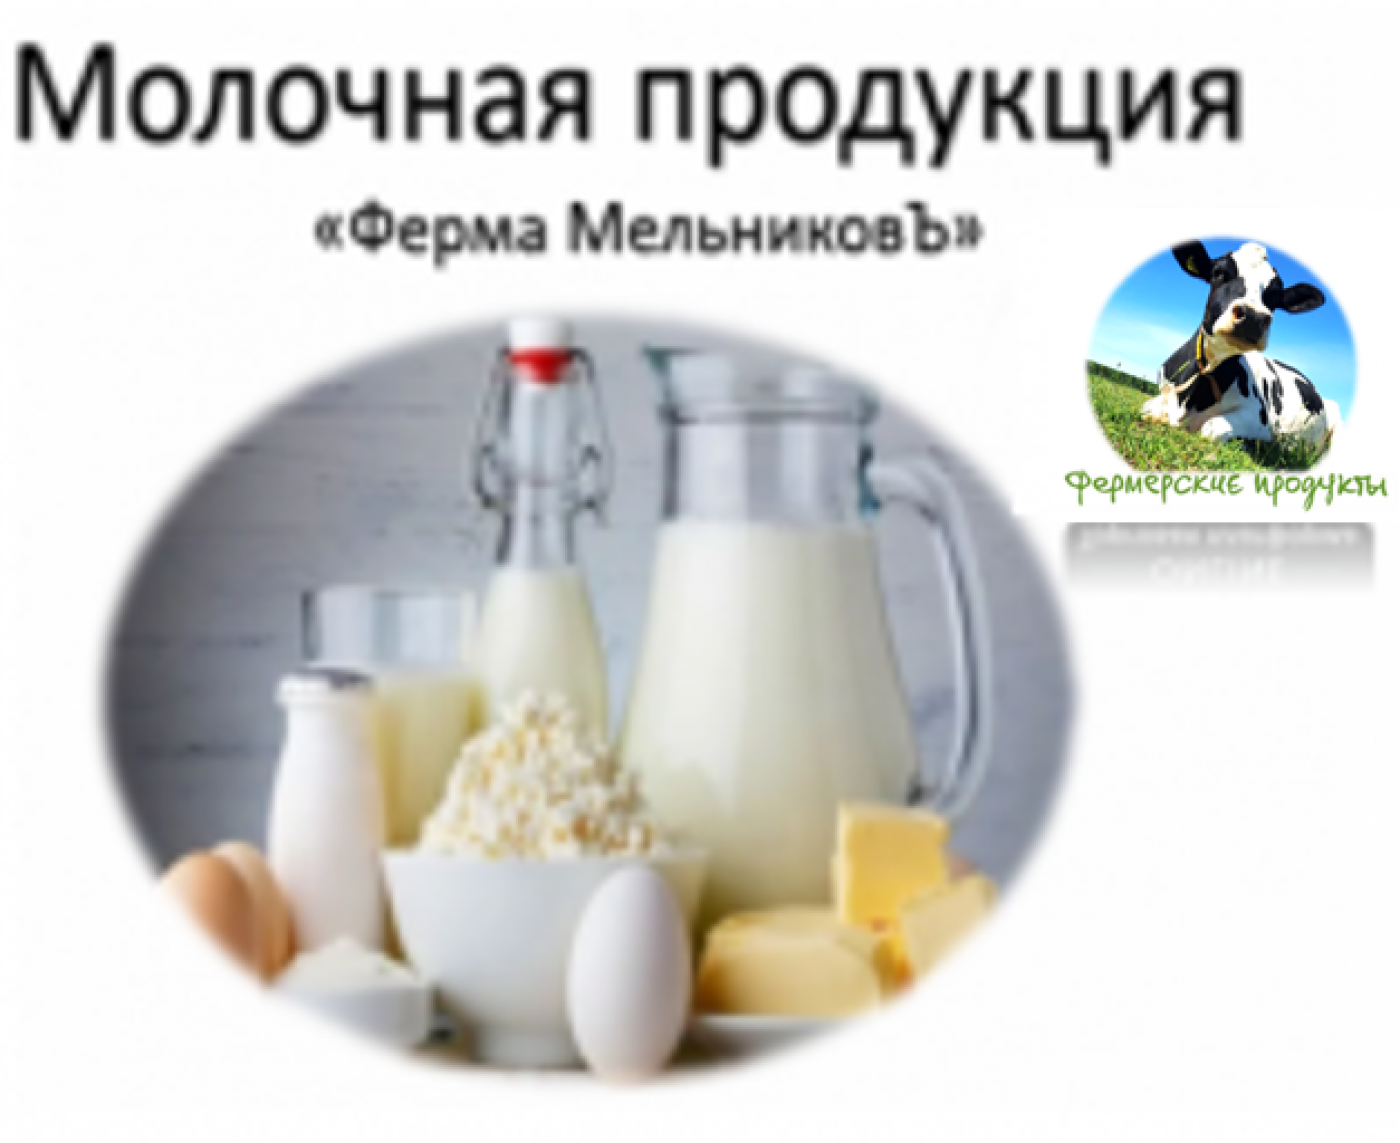 Фермерские продукты заказать онлайн в Калуге и Калужской области, Троицк Москва , Москва и Московская область